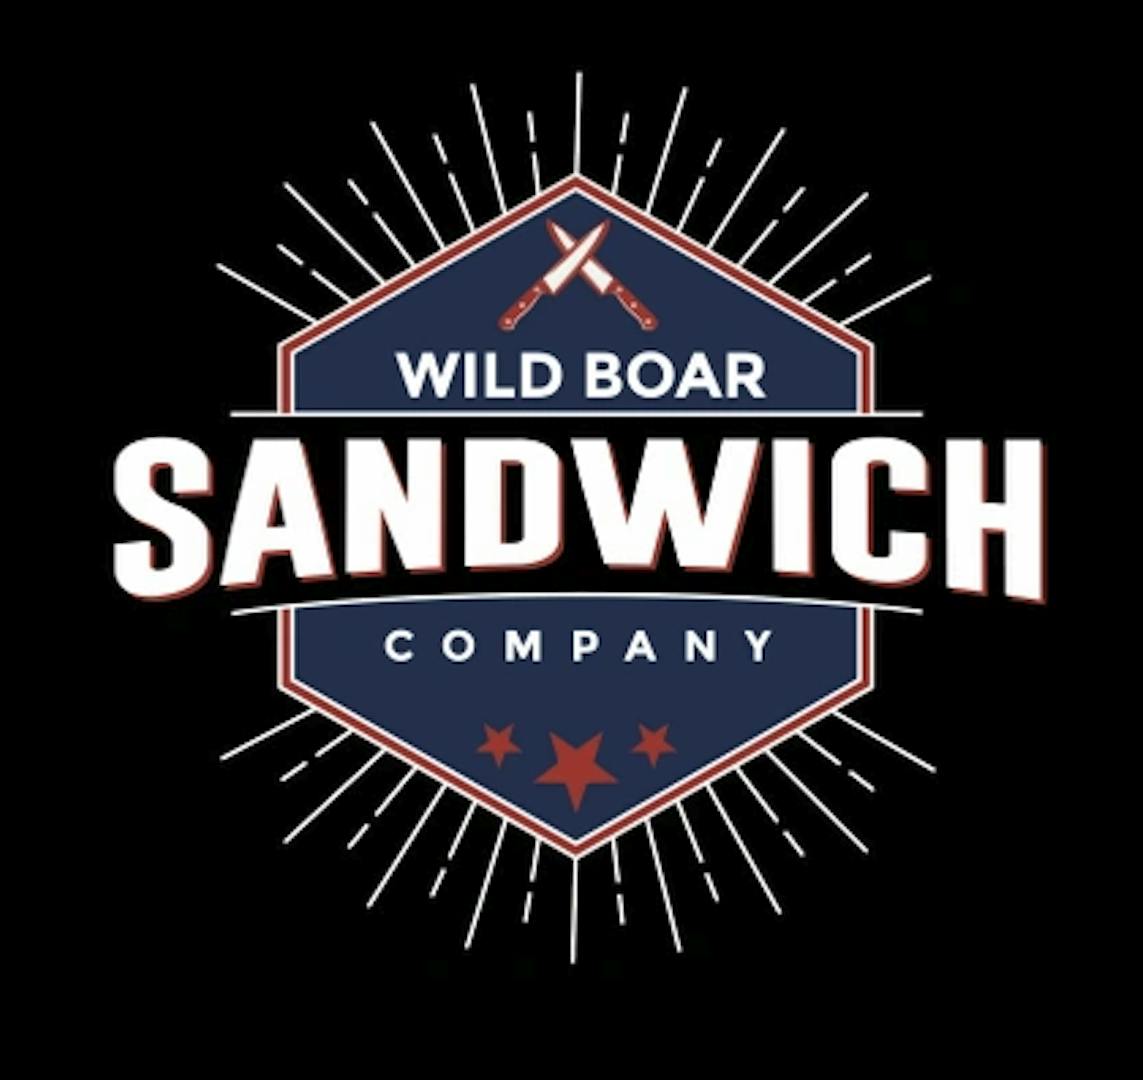 Wild Boar Sandwich